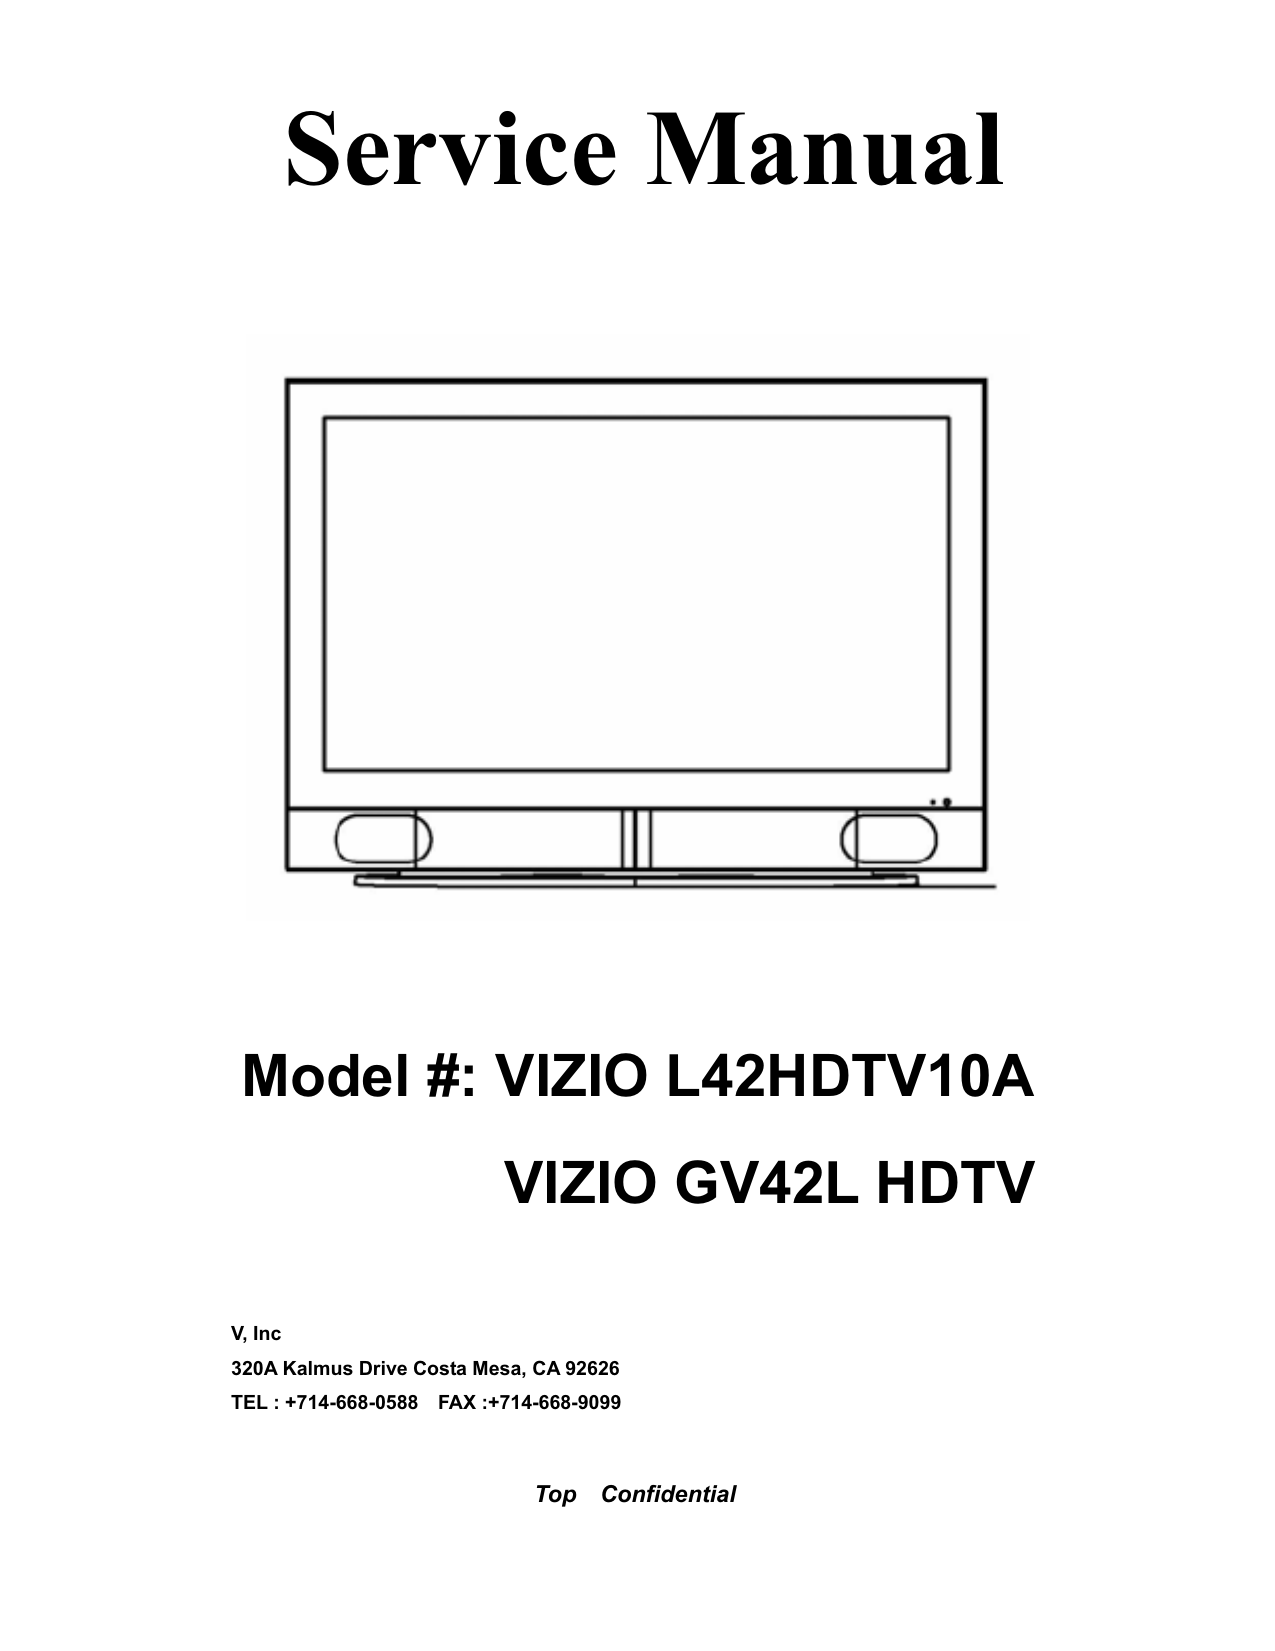 L42HDTV10A